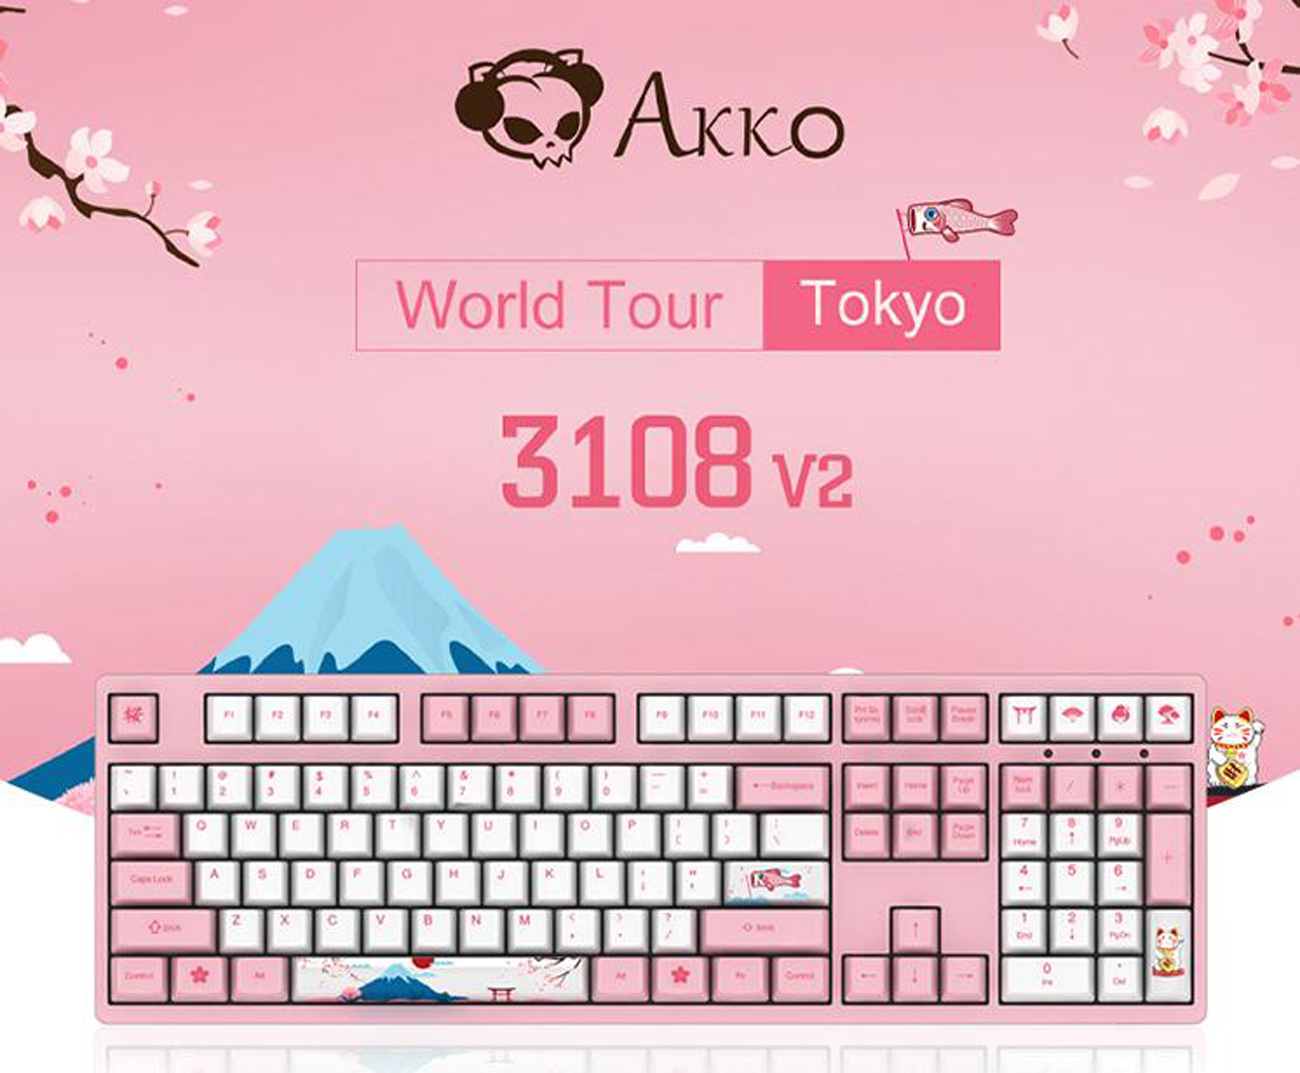 Akko World Tour Tokyo r1 3108 v2. Akko 3108 v2 World Tokyo tu. Akko Sakura Tokyo. Клавиатура Tokyo фиолетовая.